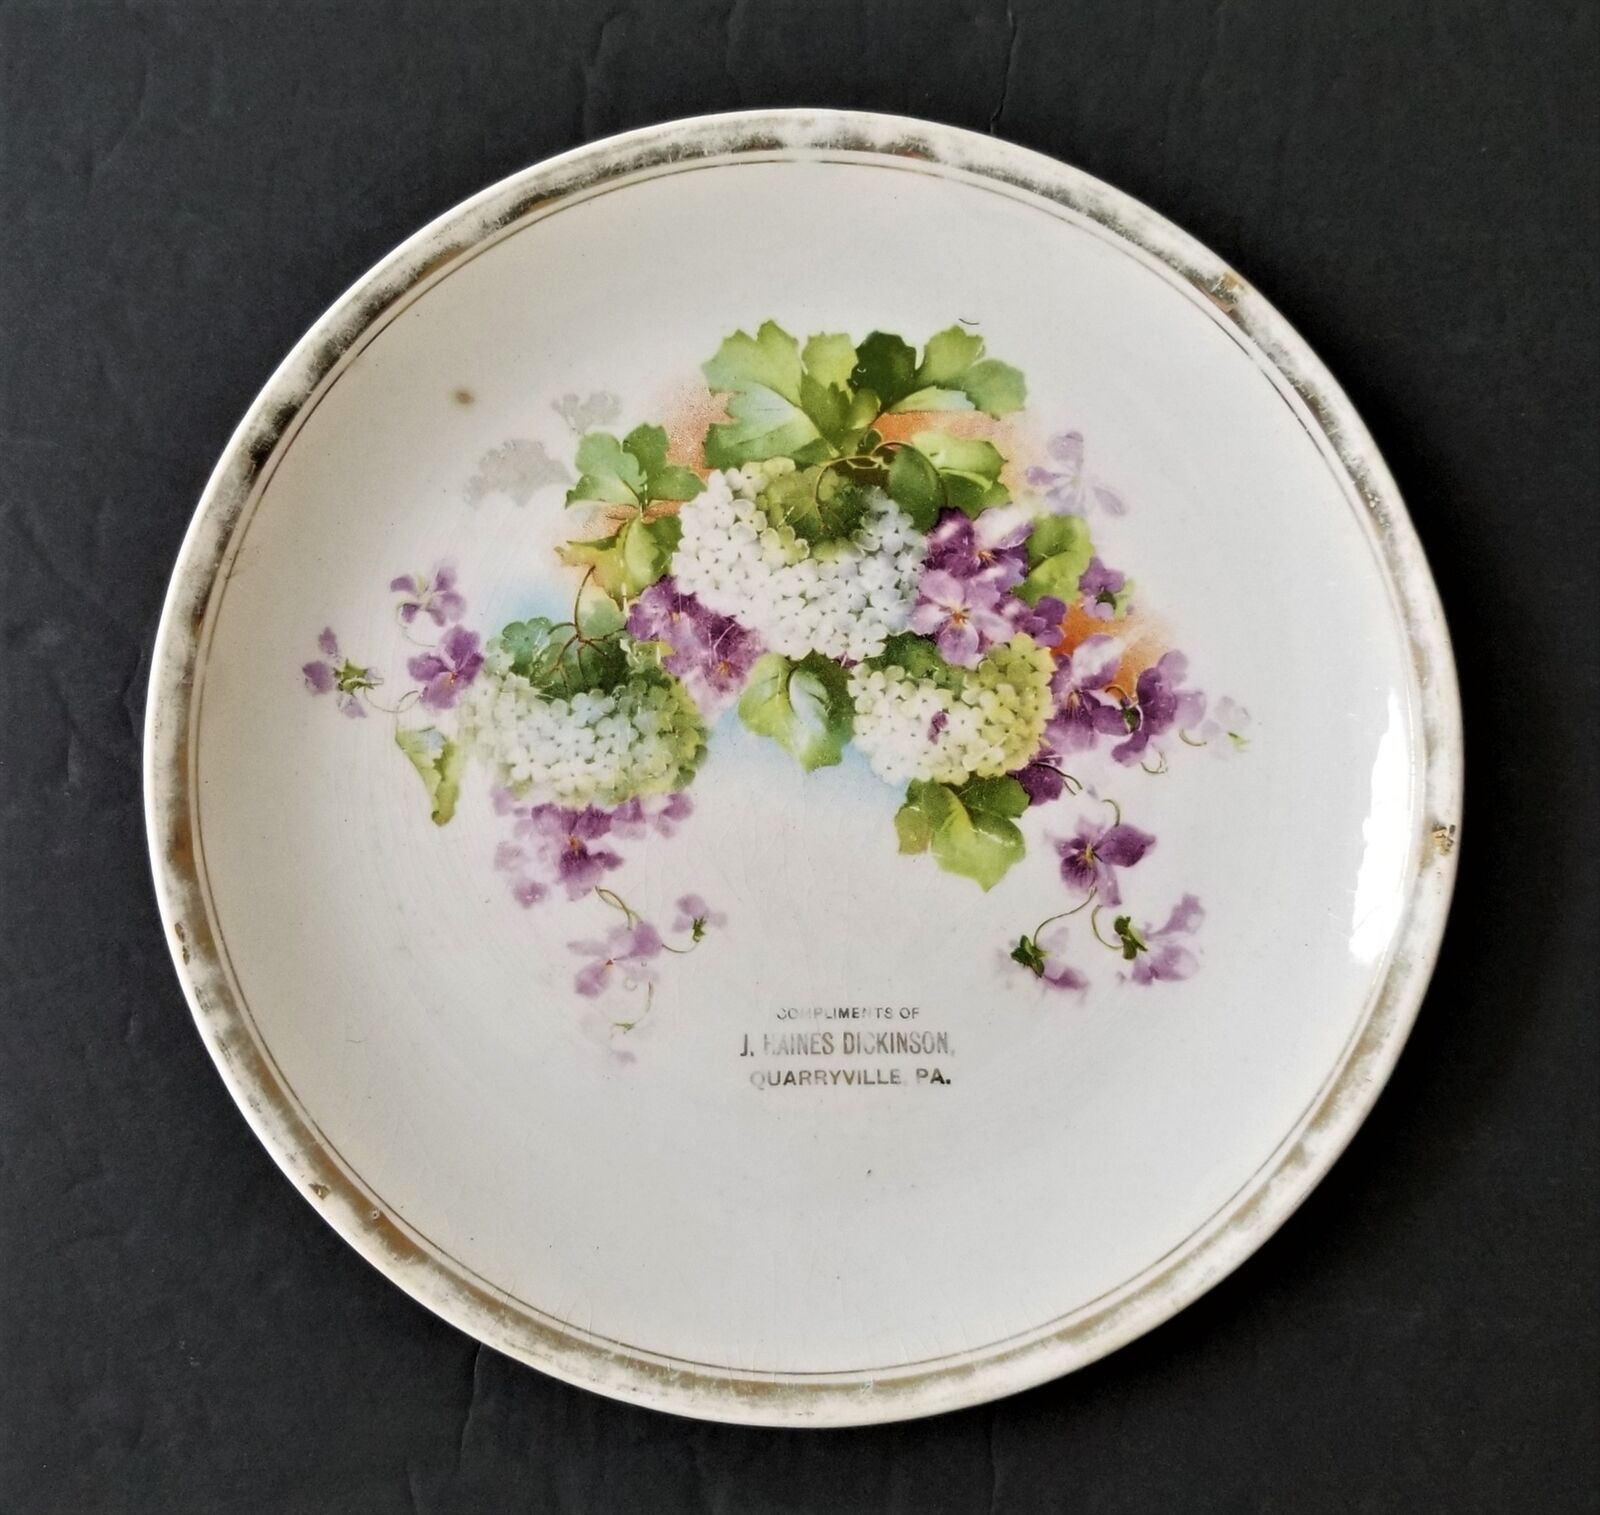 1910s antique AD PLATE quarryville pa J HAINES DICKINSON porcelain purple floral